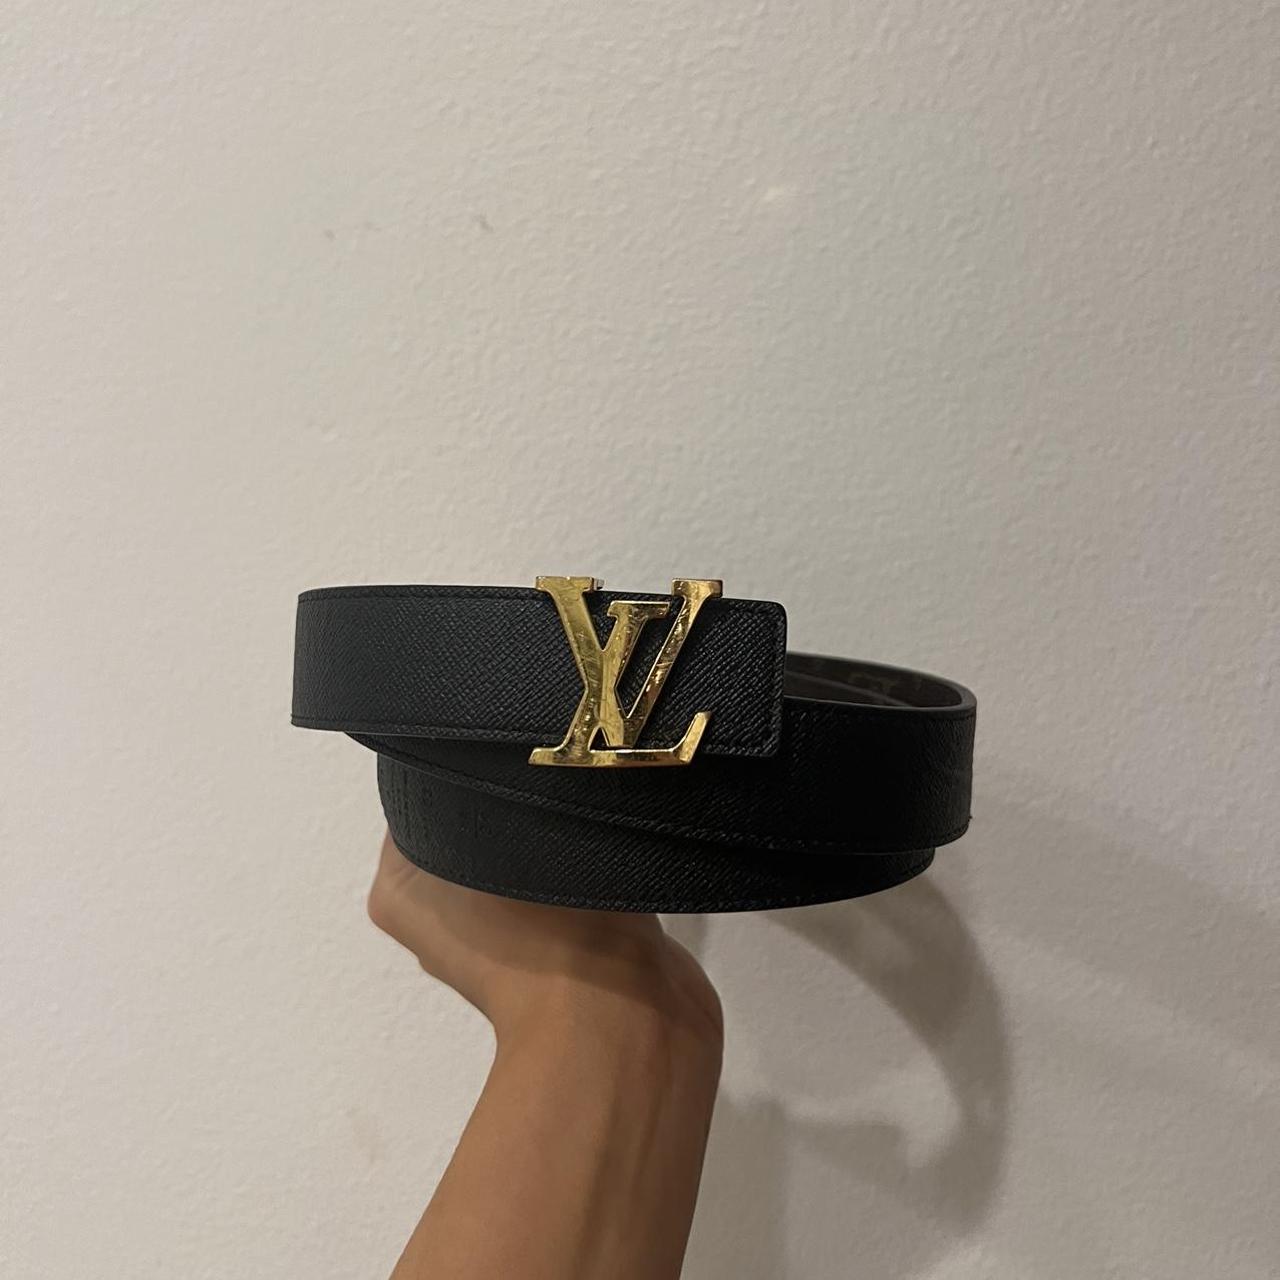 Louis Vuitton Belt - Depop